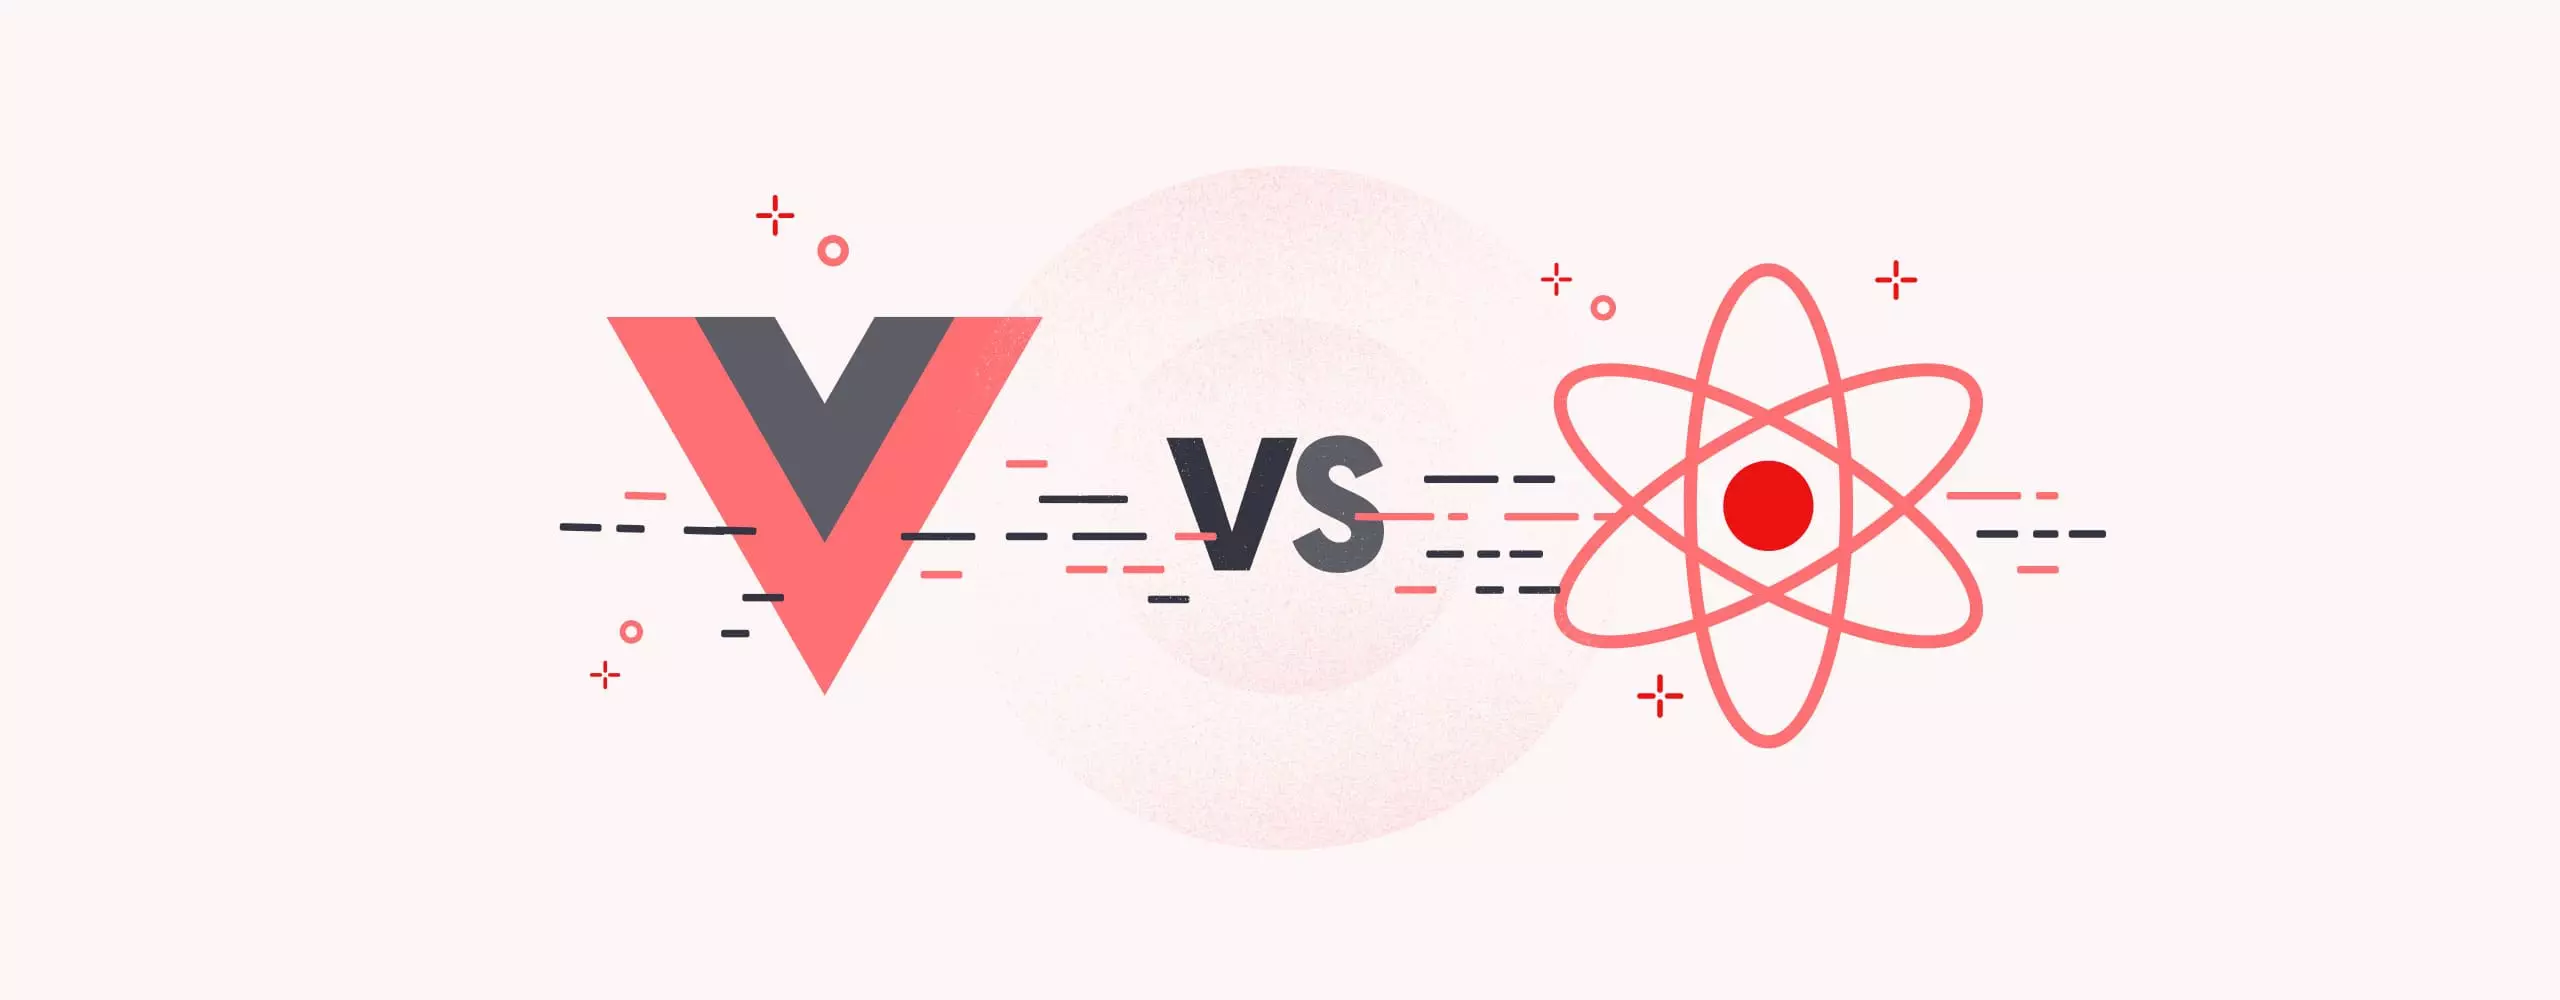 ری اکت (React) در مقابل Vue.js کدام یک را برای Frontend انتخاب کنید؟